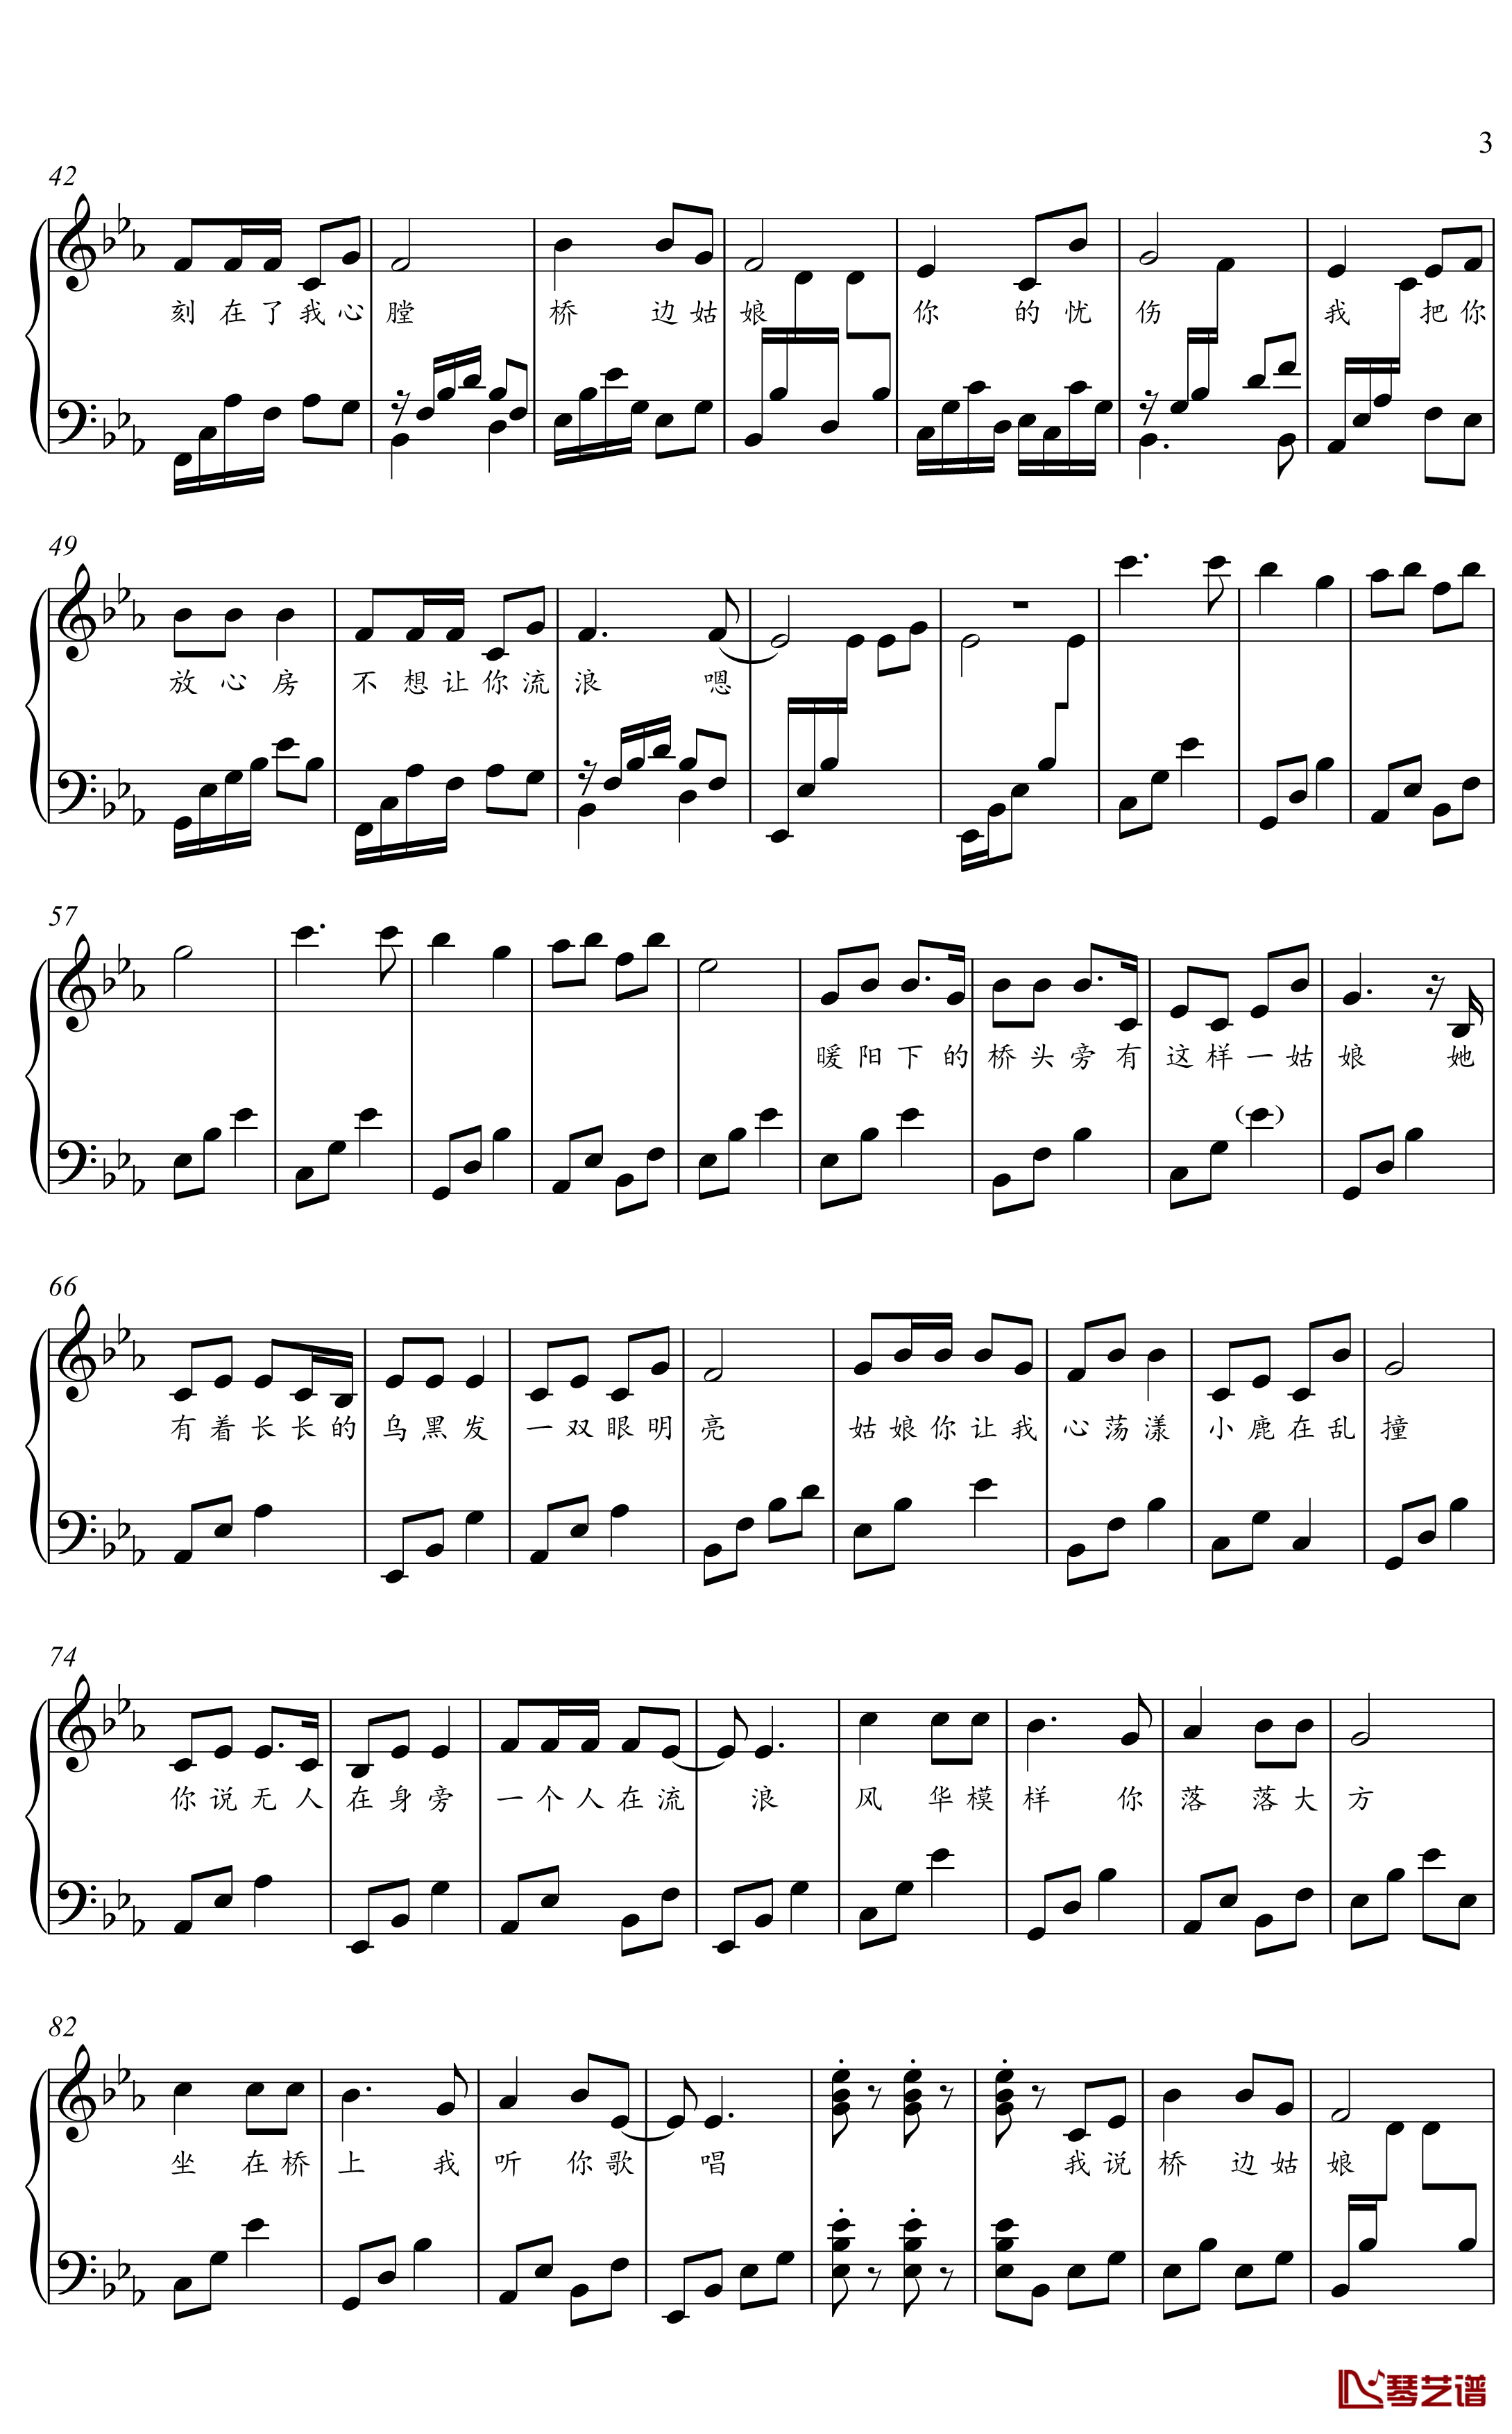 桥边姑娘钢琴谱-金老师原声独奏谱2001033